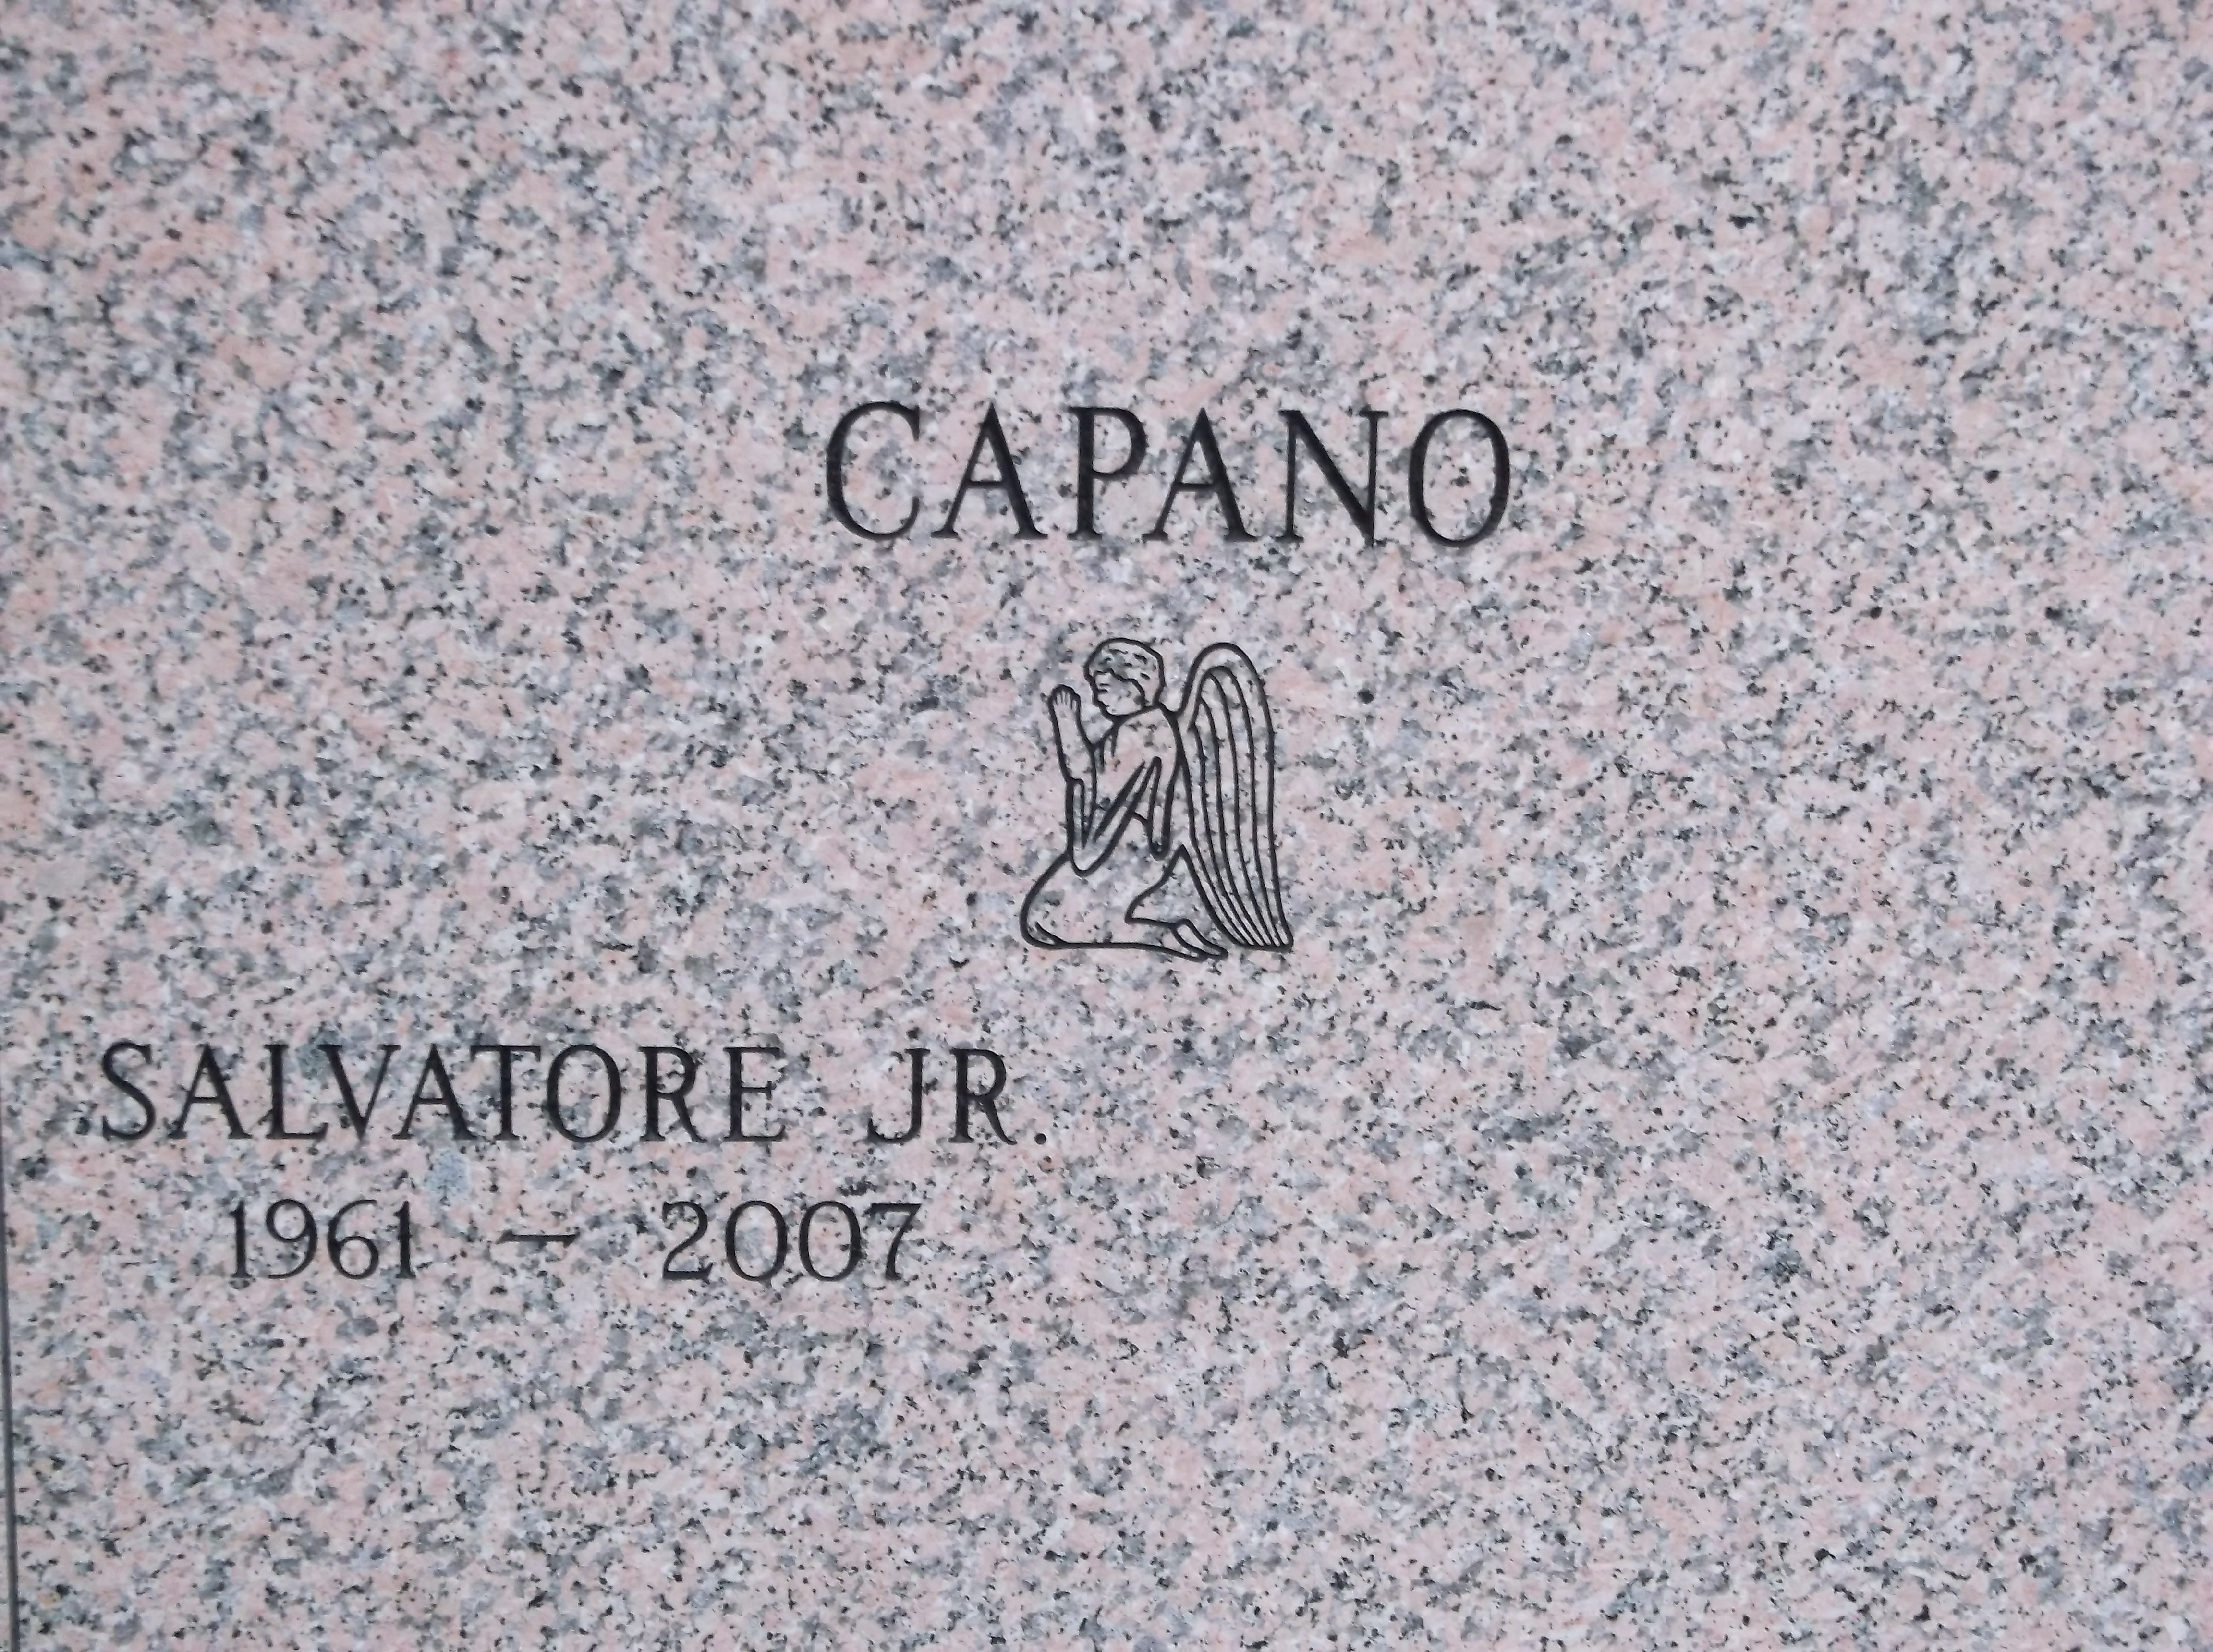 Salvatore Capano, Jr